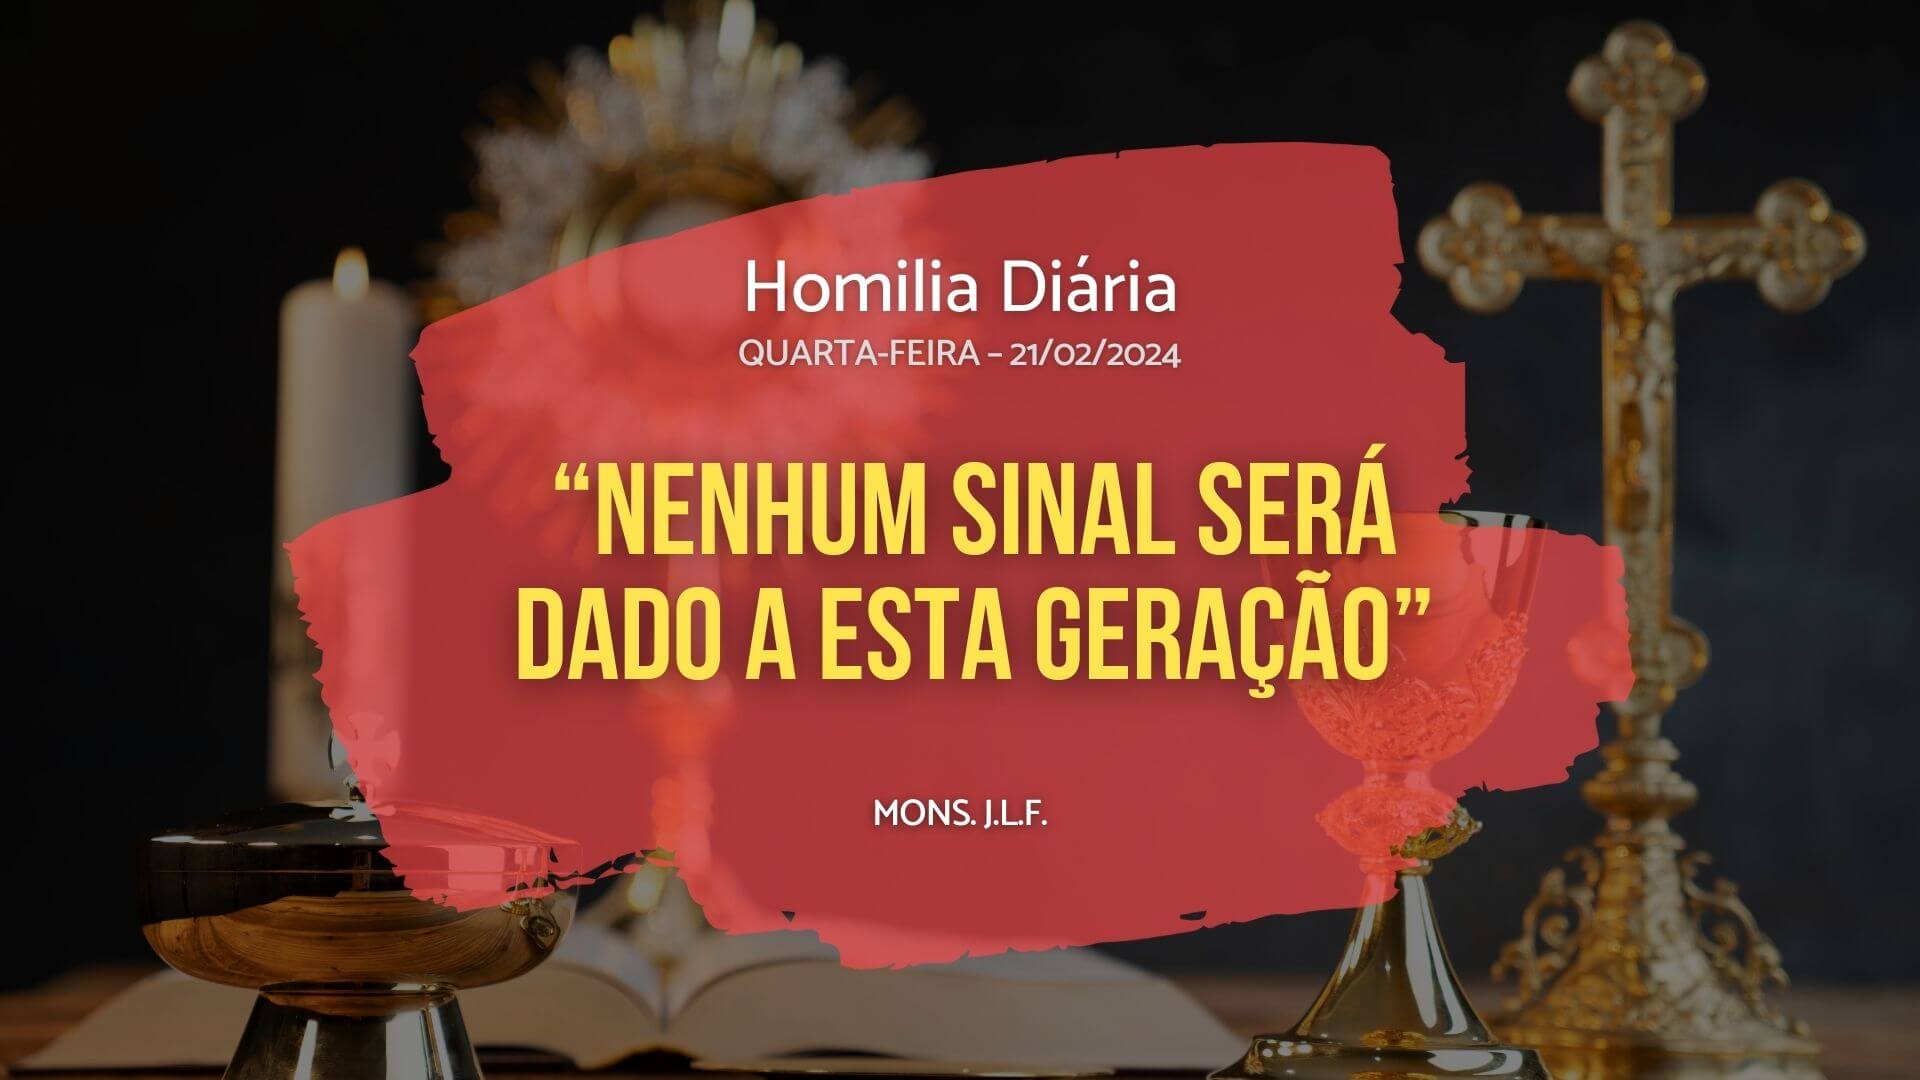 Homilia Diária - Evangelho de hoje - JLF